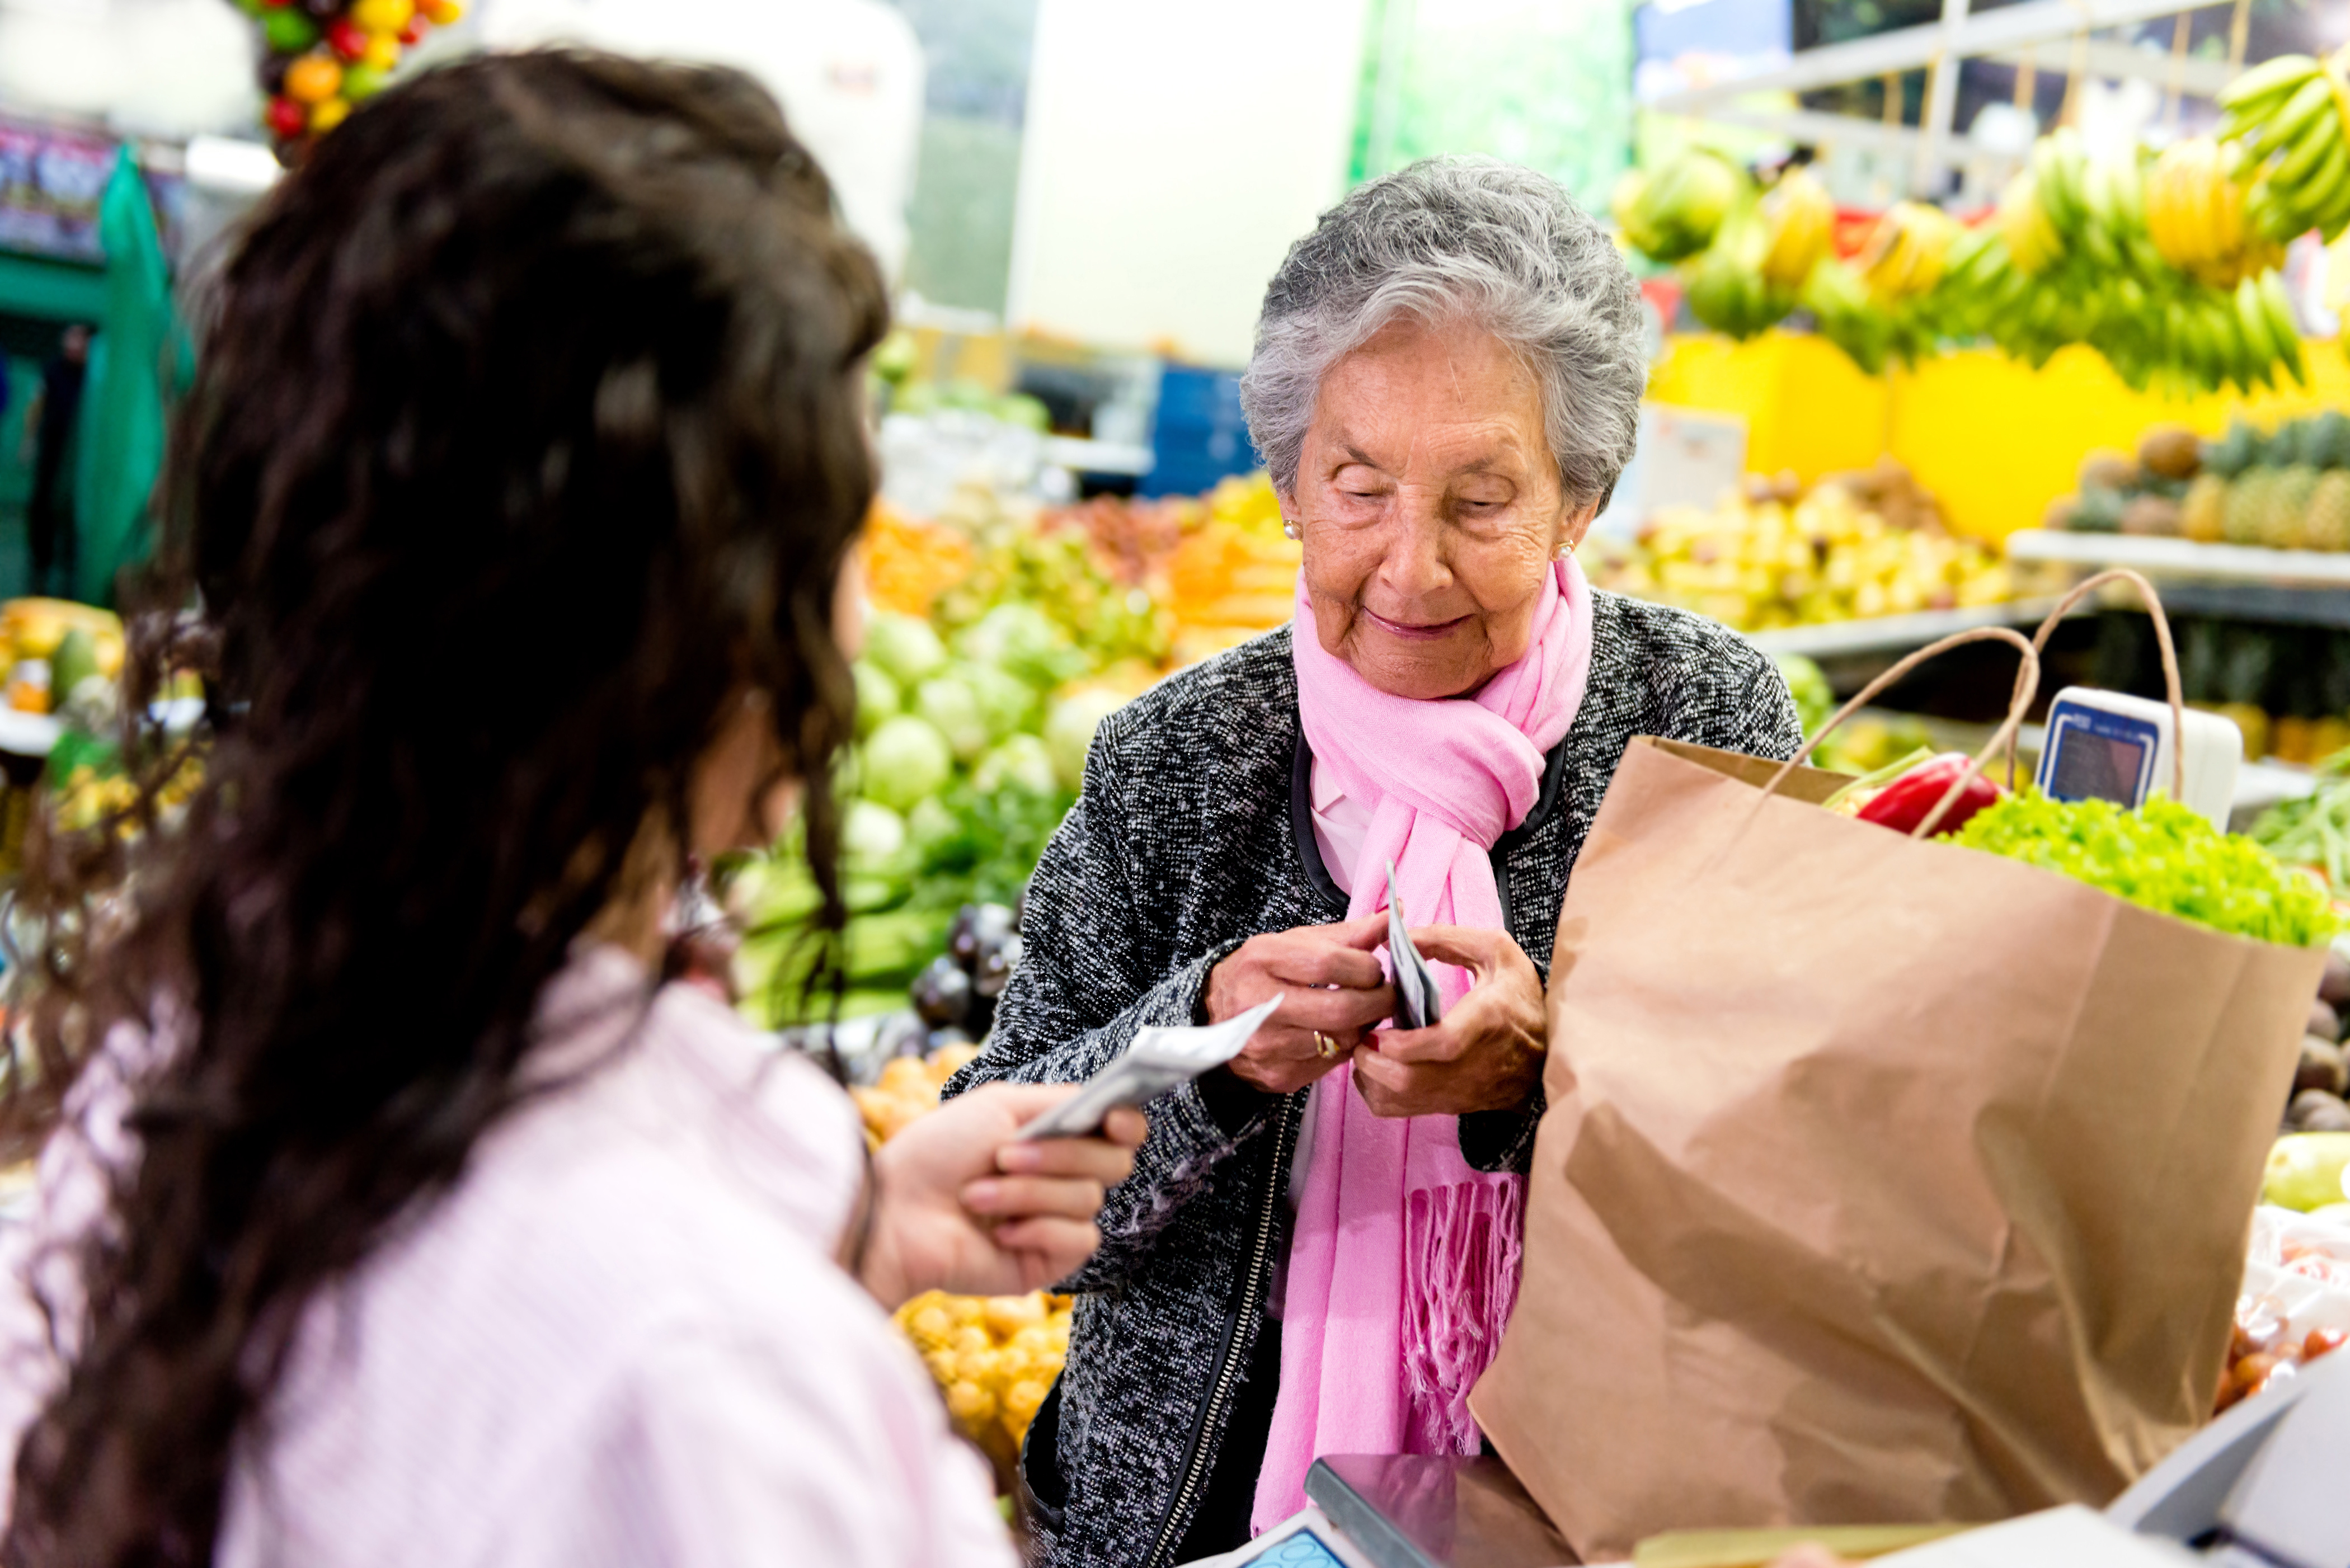 Los adultos mayores también podrán obtener beneficios en el ámbito de salud.
Foto Getty Images